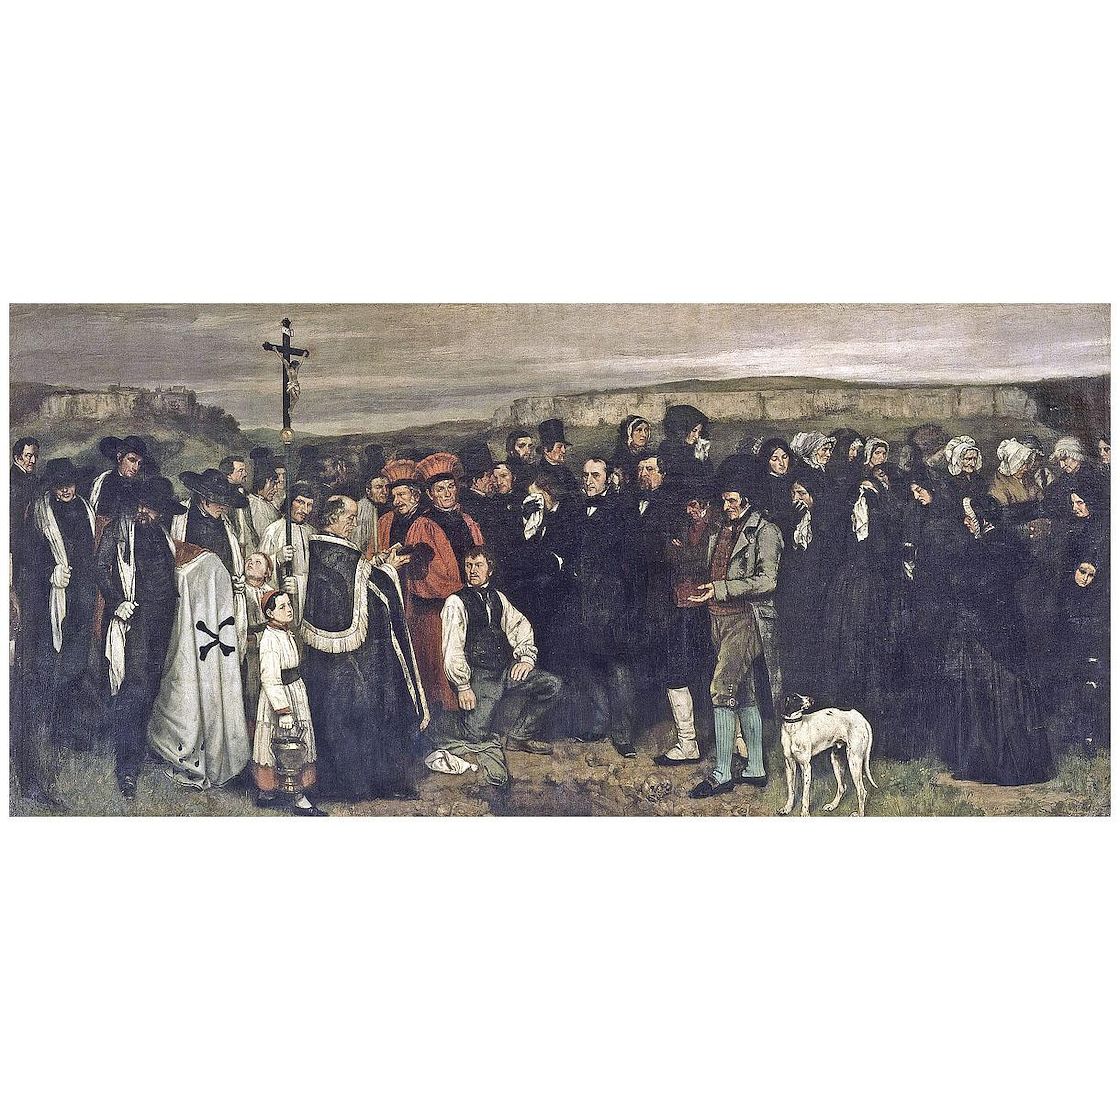 Gustave Courbet. Funérailles à Ornans. 1849. Musee d’Orsay Paris